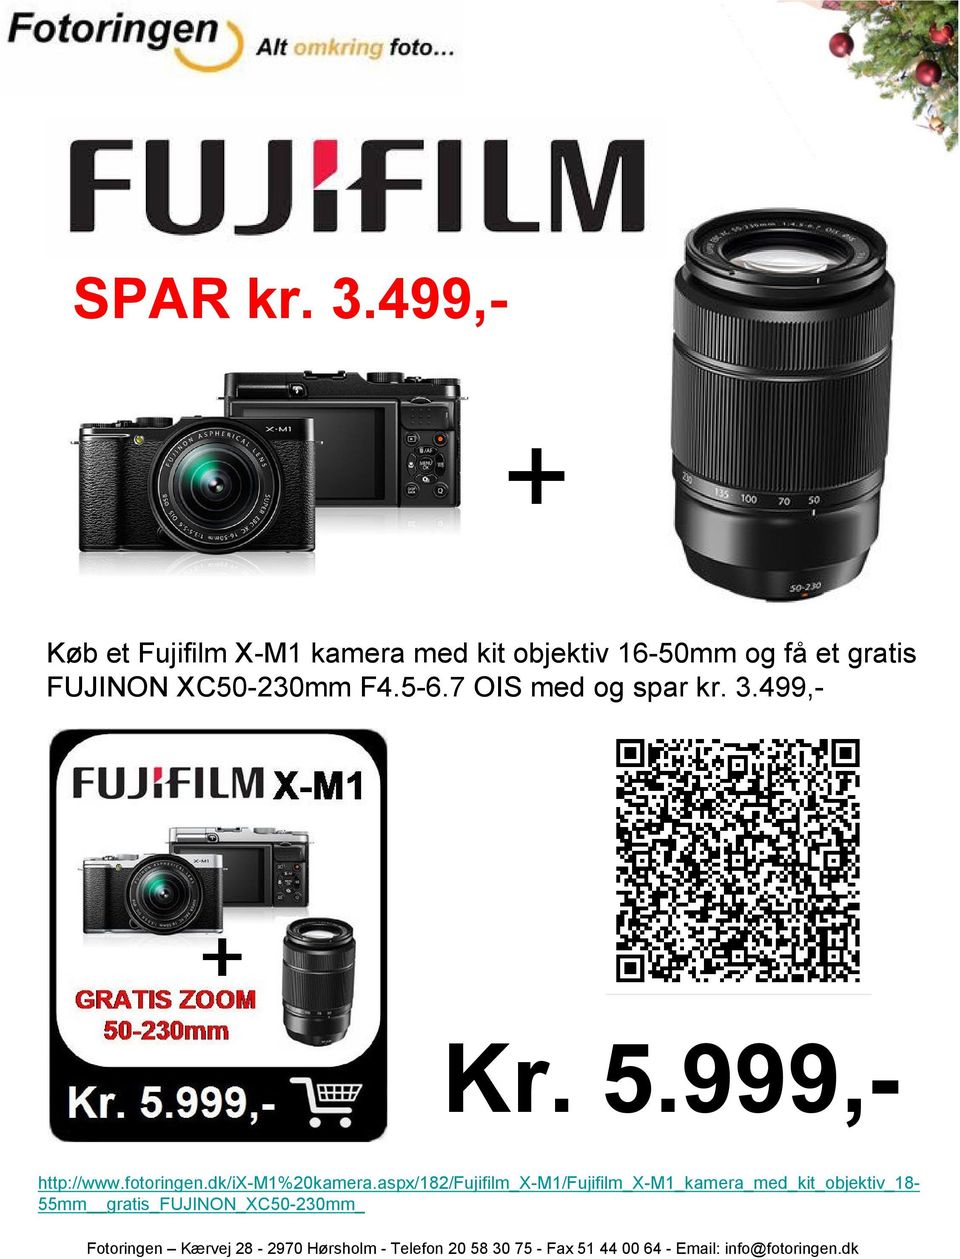 gratis FUJINON XC50-230mm F4.5-6.7 OIS med og spar kr. 3.